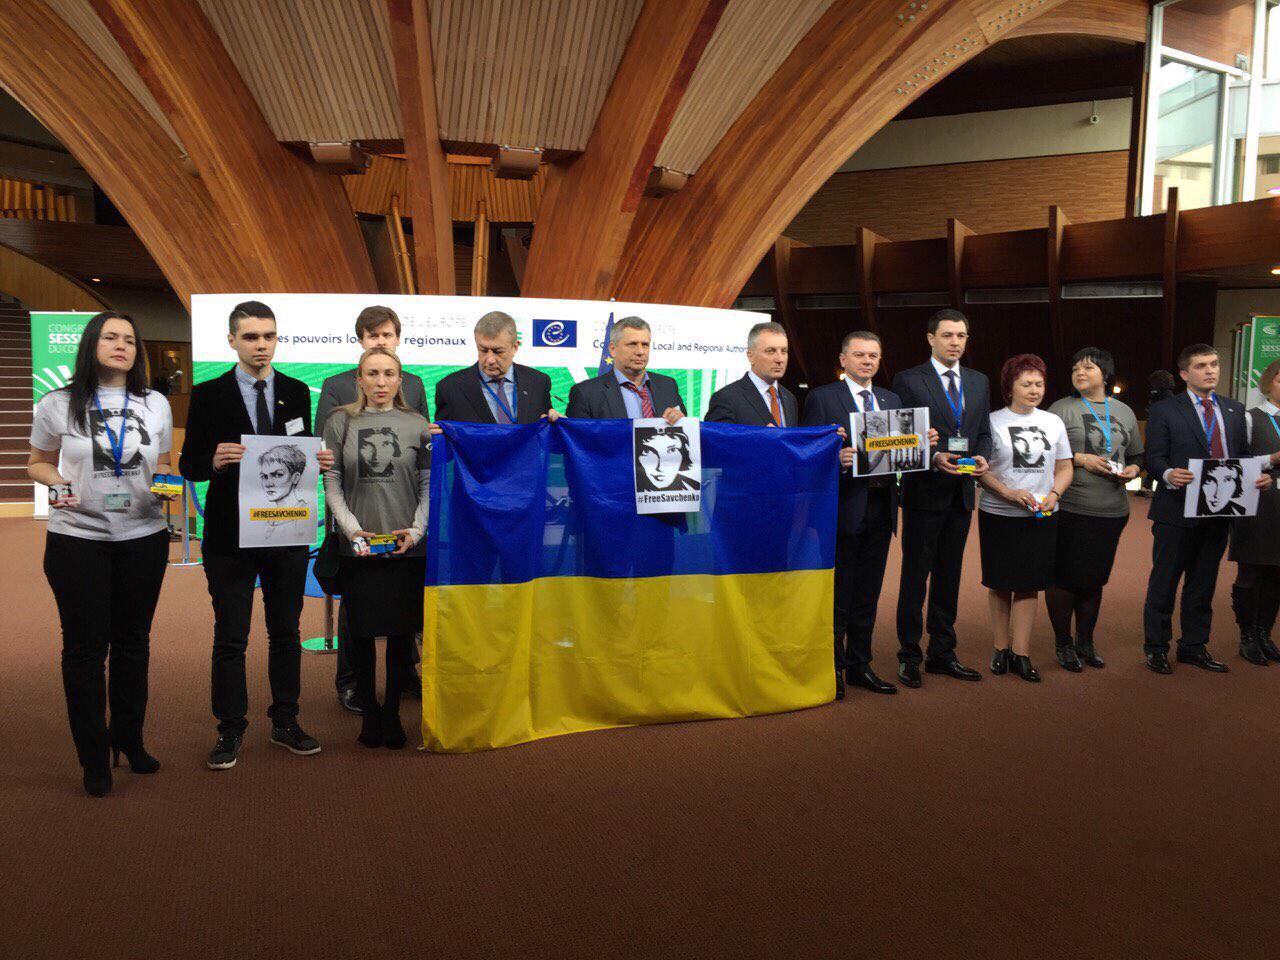 Українська делегація спільно з членами постійного представництва України при Раді Європи провели акцію на підтримку льотчиці Надії Савченко під назвою “FreeSavchenko”